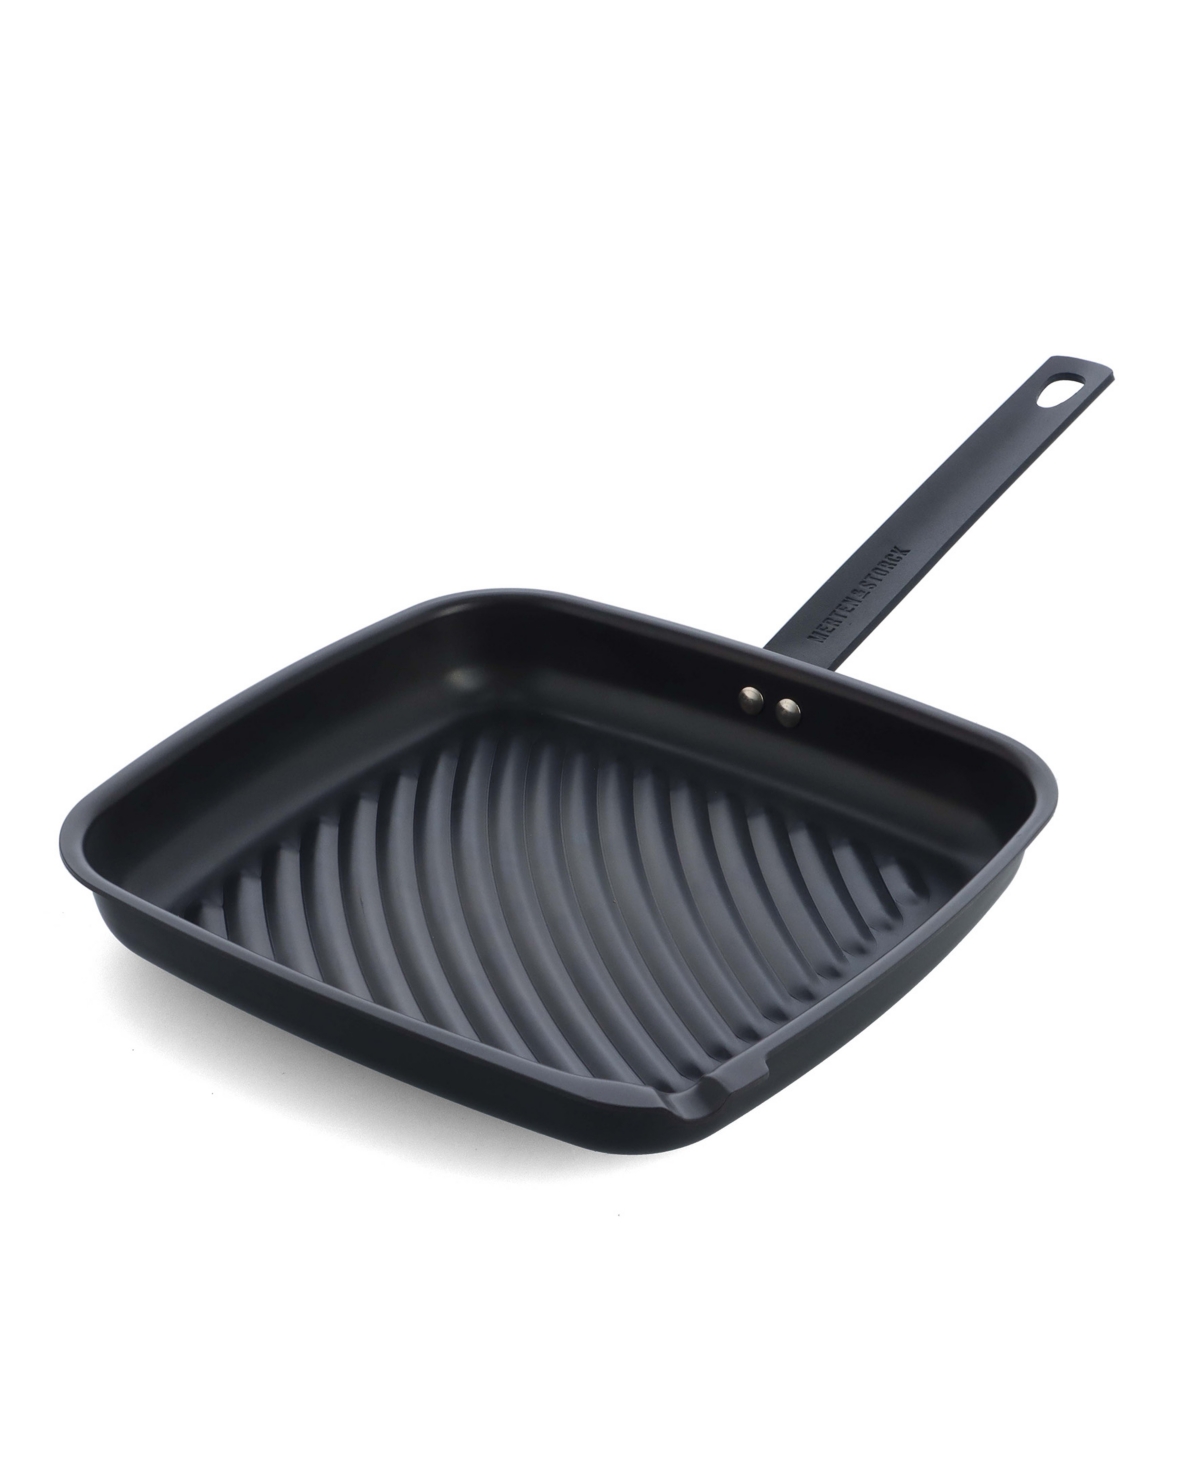 Merten & Storck Carbon Steel 11" Grill Pan In Black